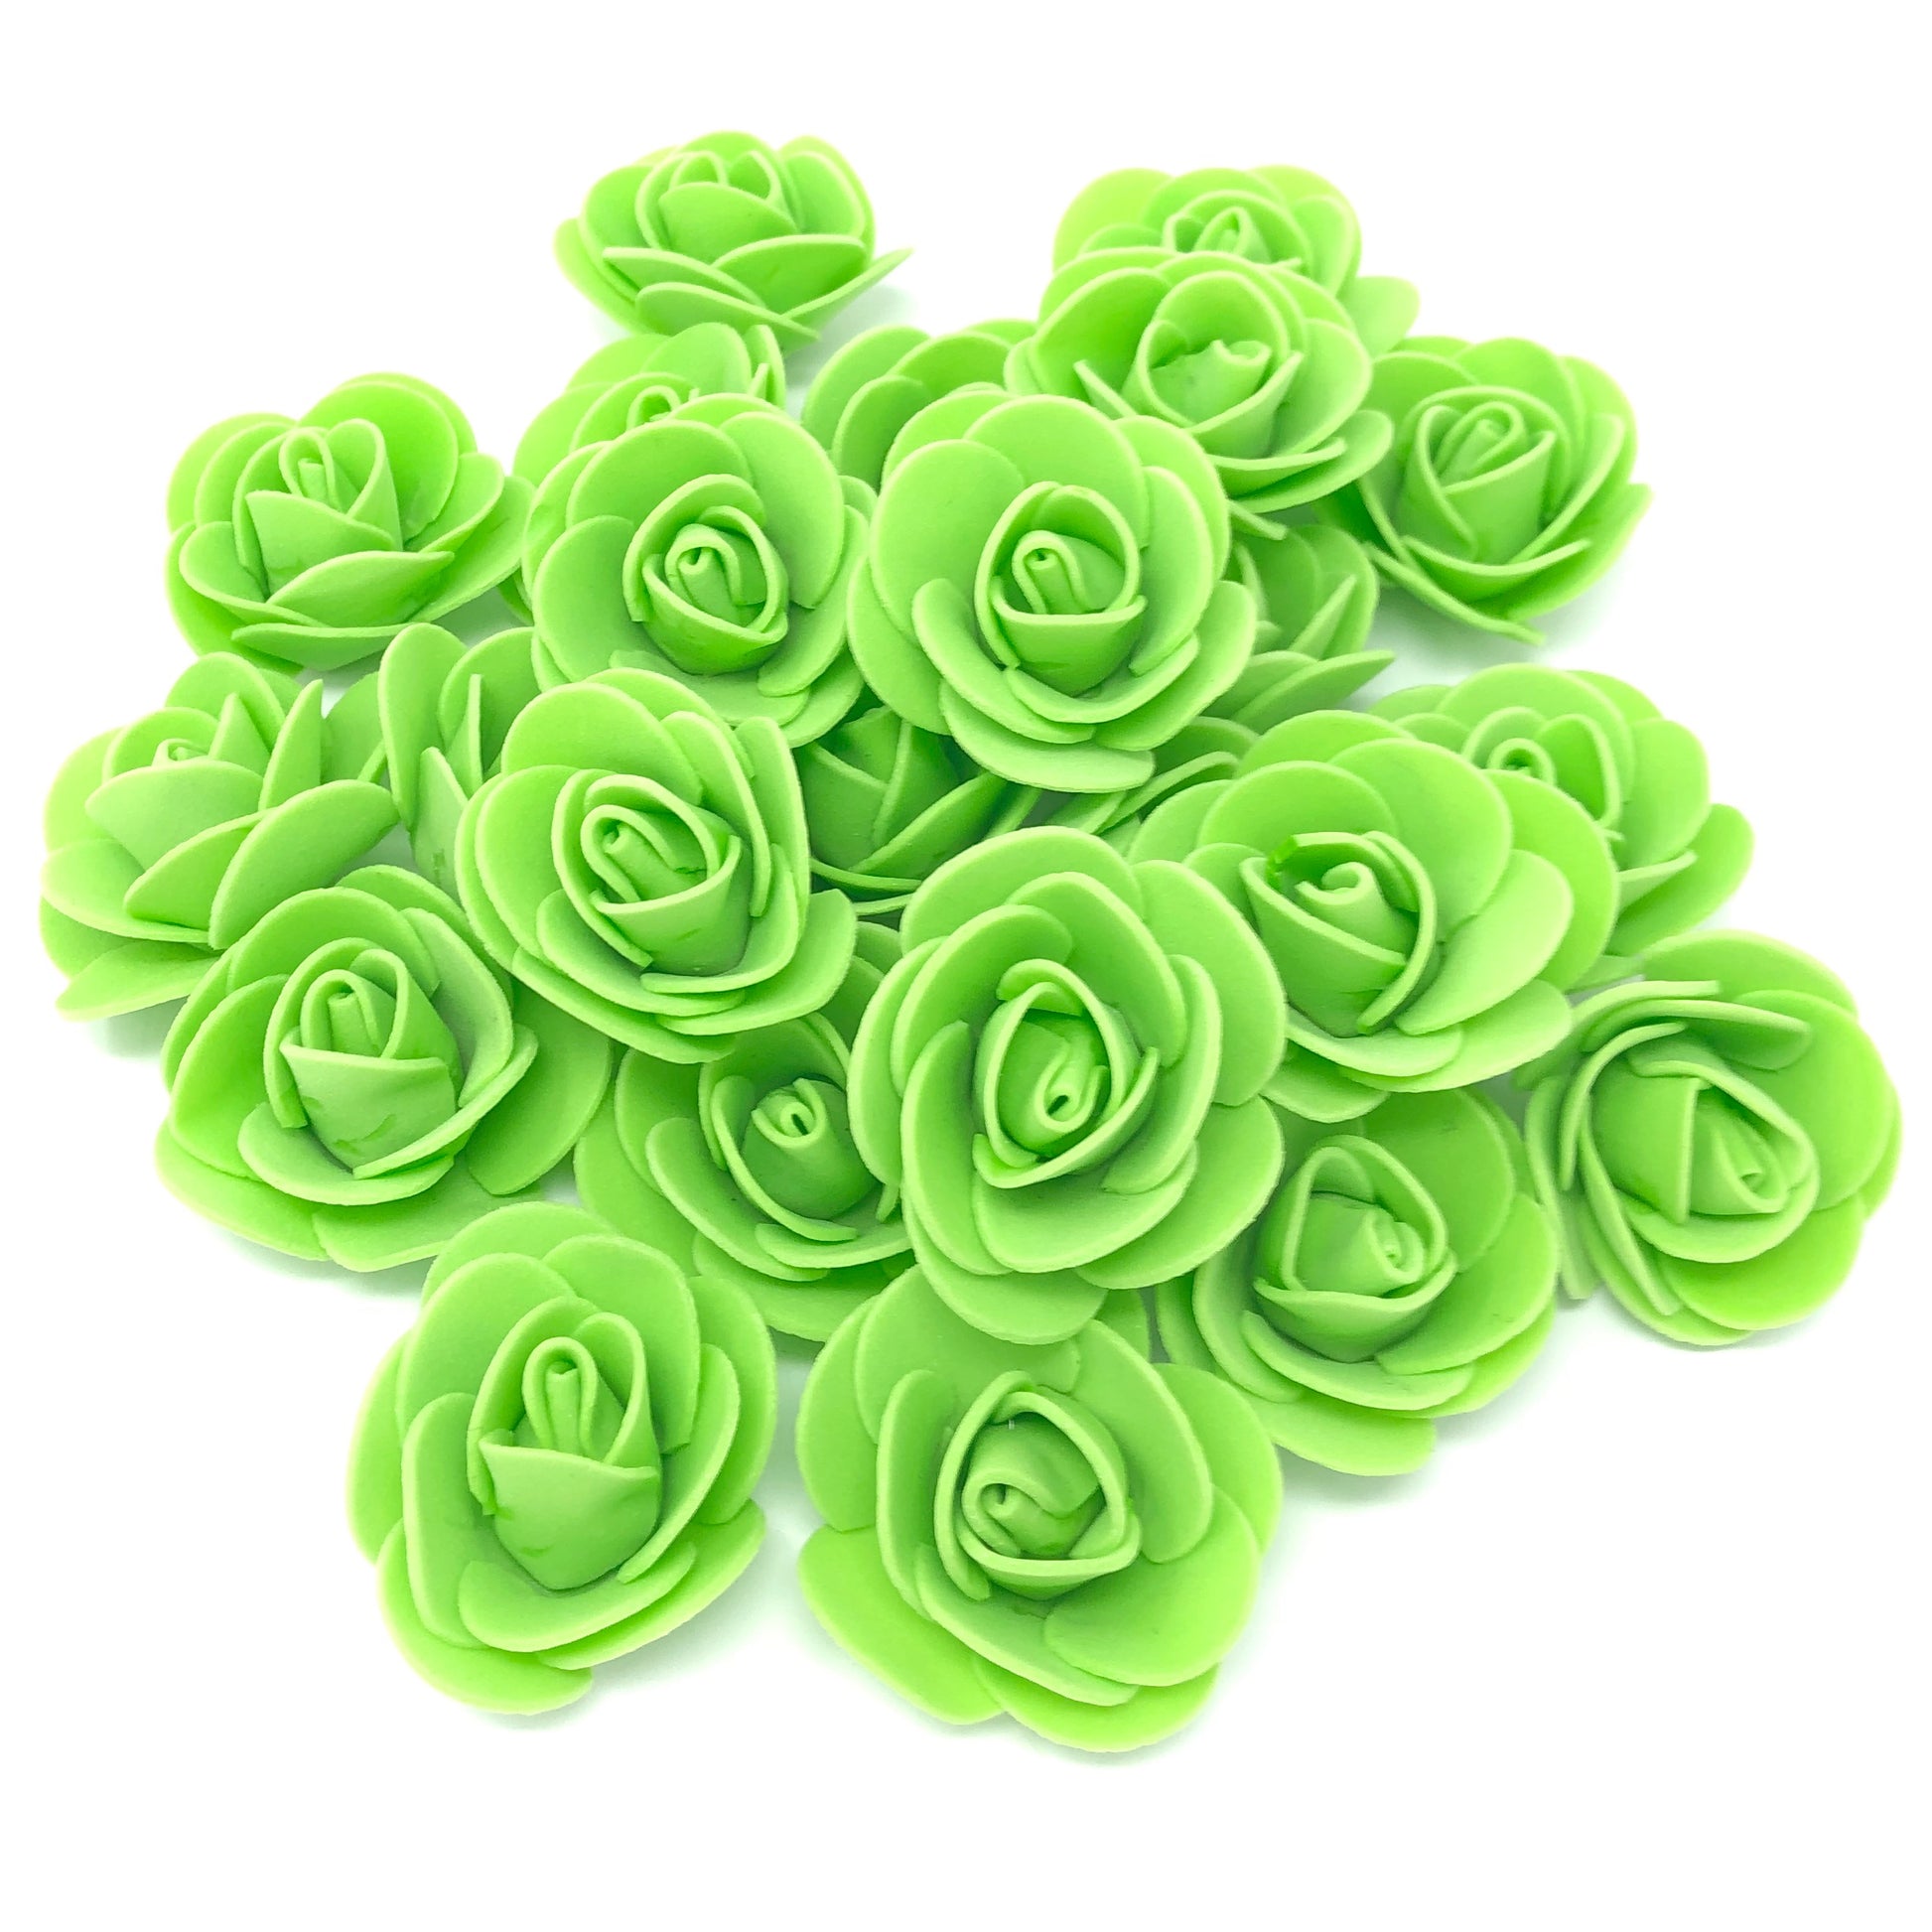 Green 30mm Foam Rose Flowers